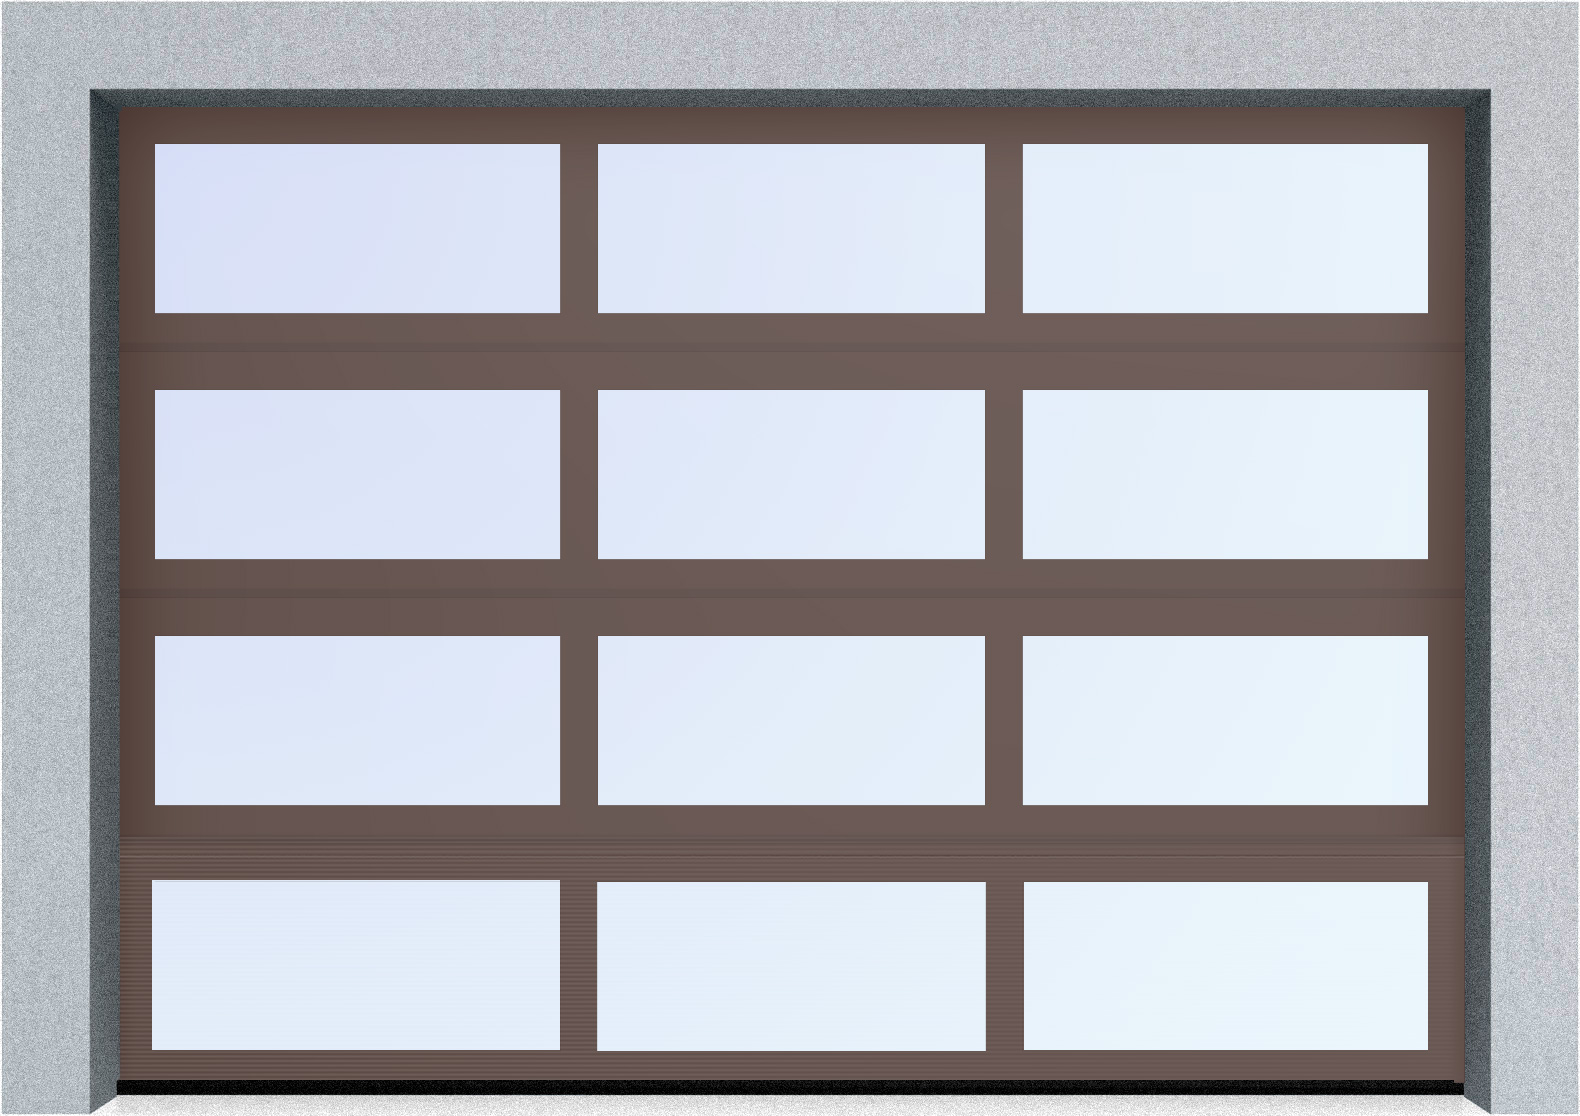  Секционные панорамные ворота серии AluTrend (АЛП) 2250х2375 нижняя панель стандартные цвета, фото 7 